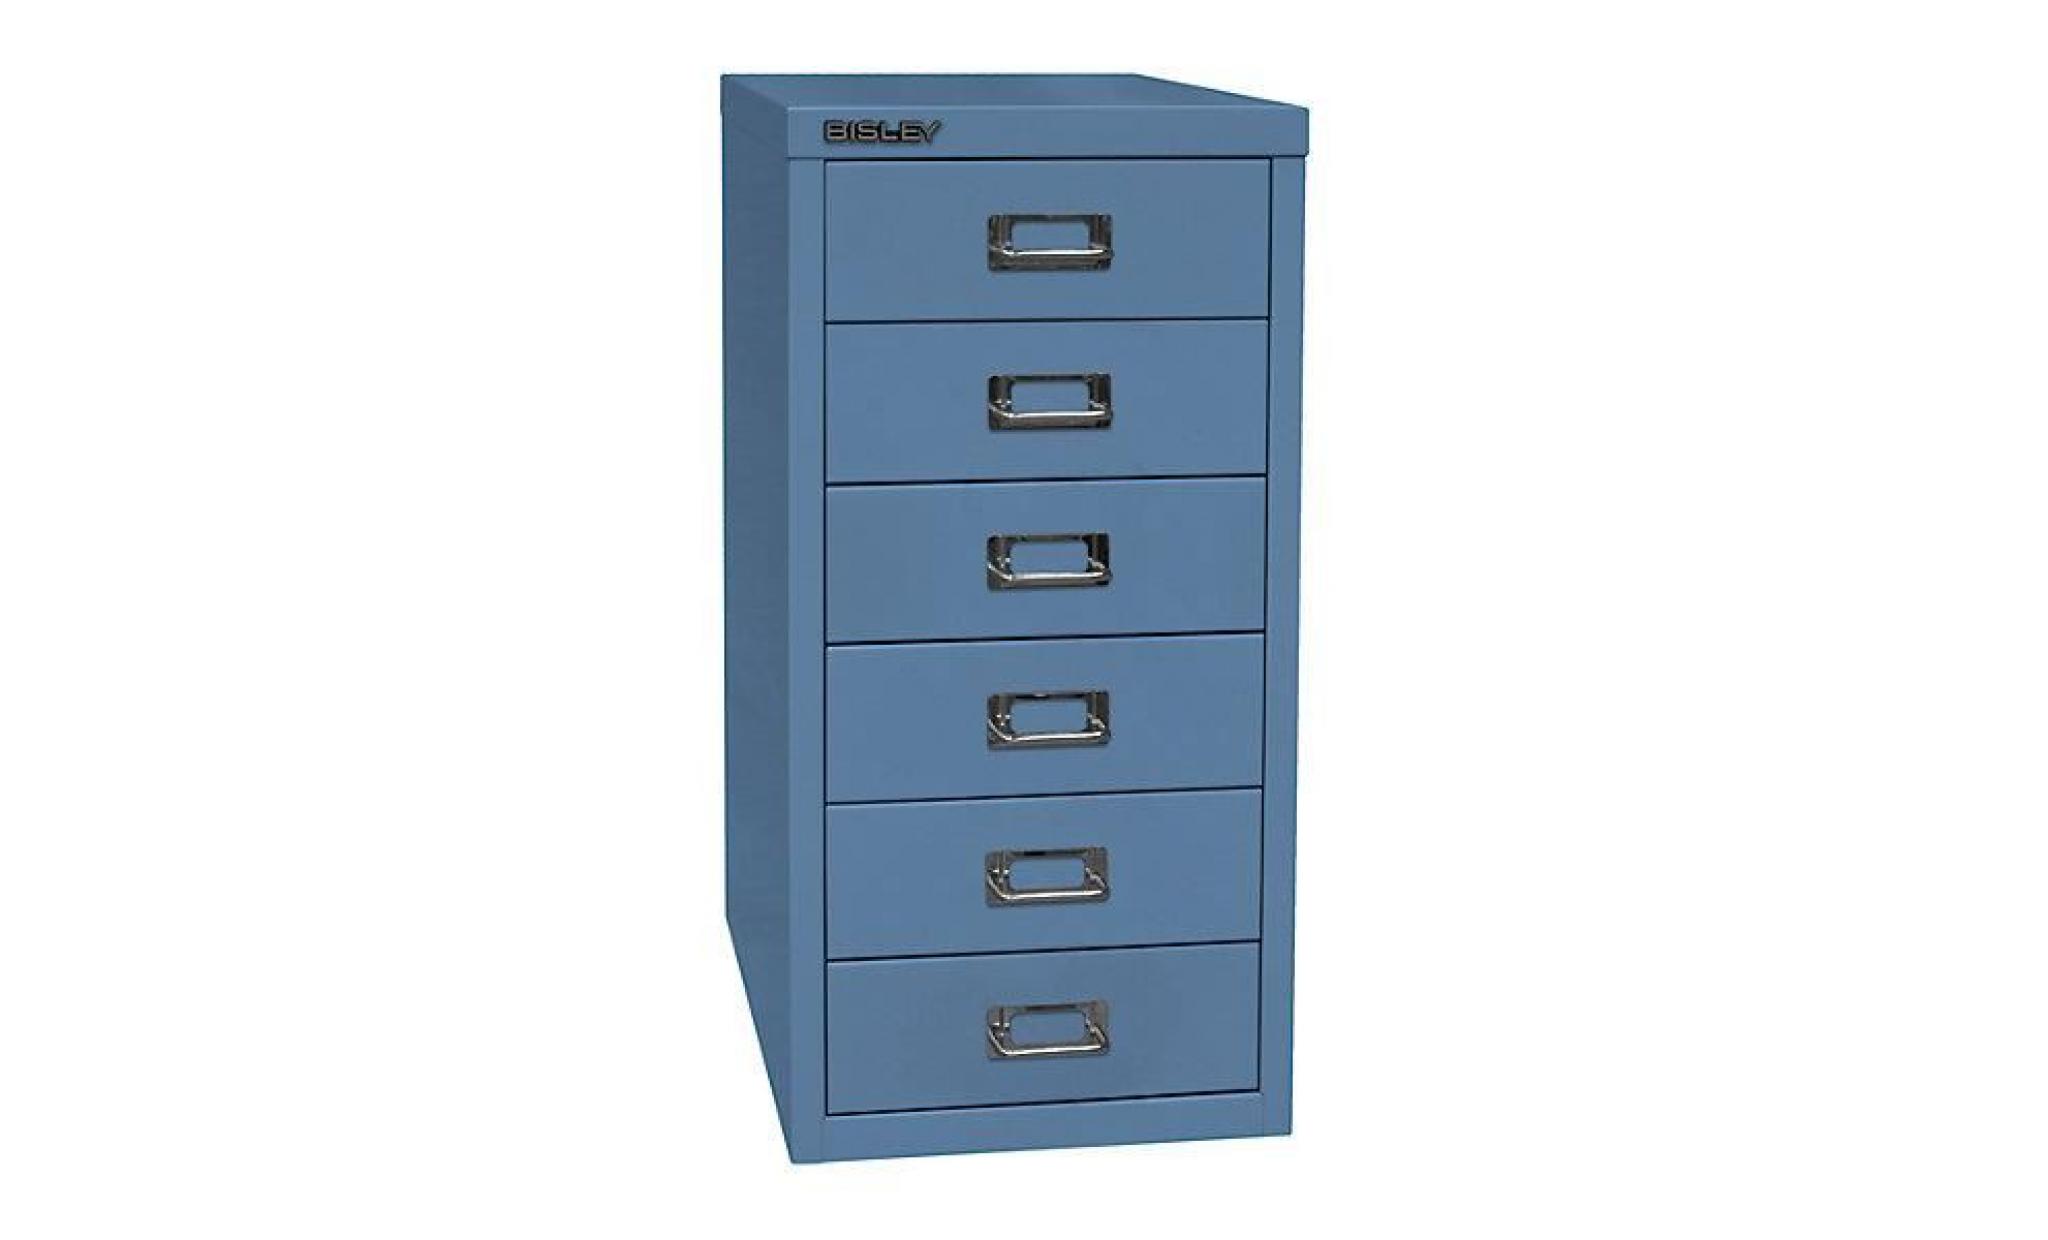 bisley multidrawer™ série 29   format a4, 6 tiroirs   vert   armoire basse armoire de bureau armoire à tiroirs armoires basses pas cher